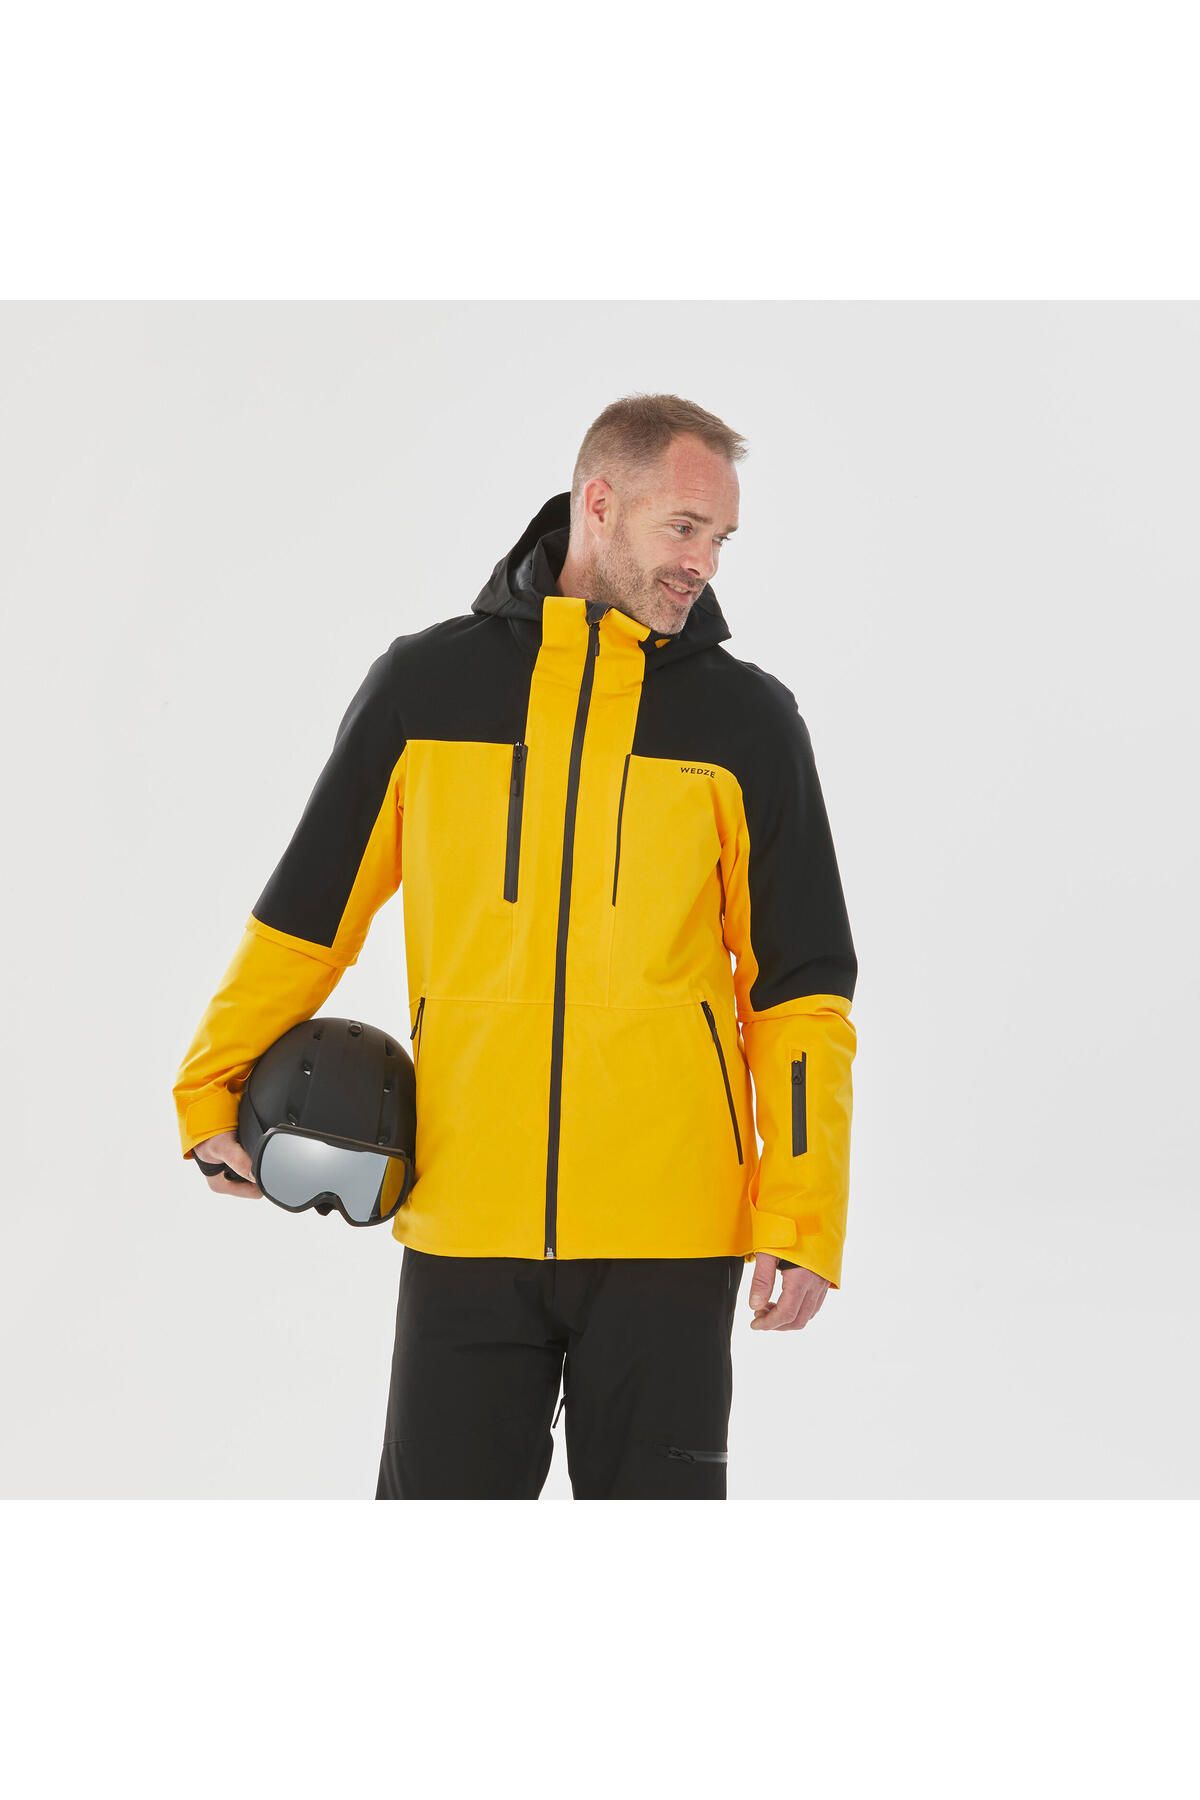 Decathlon Erkek Kayak Montu - Siyah / Sarı - Skı P 500